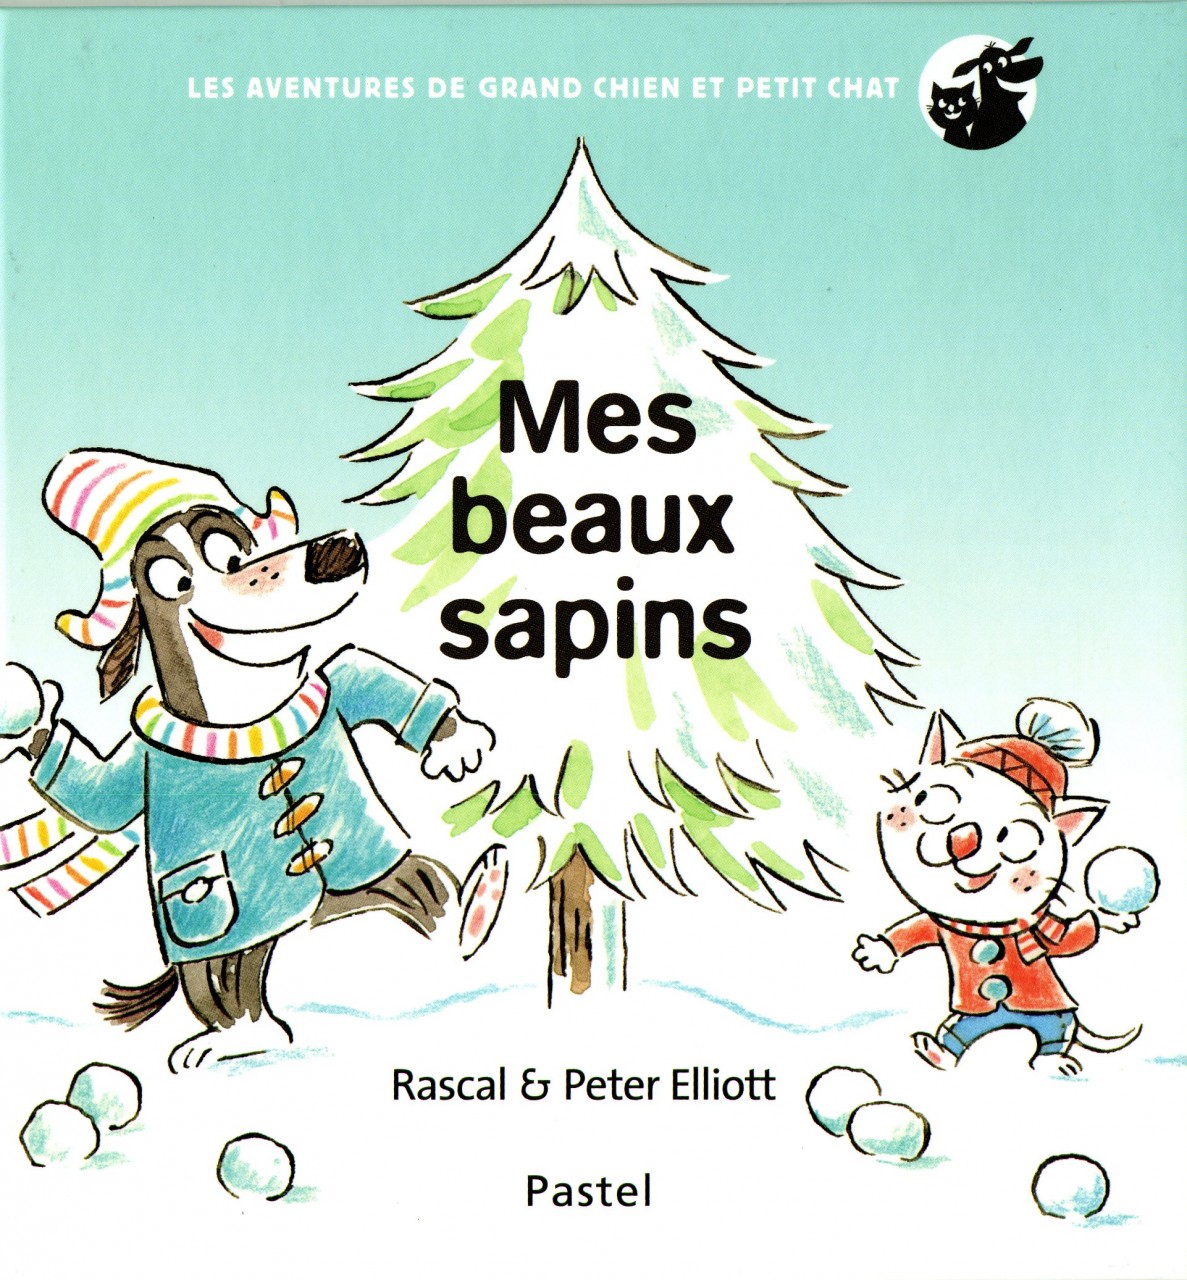 Première de couverture livre "Mes beaux Sapins" un chien et un chat se lancent des boules de neige devant un sapin